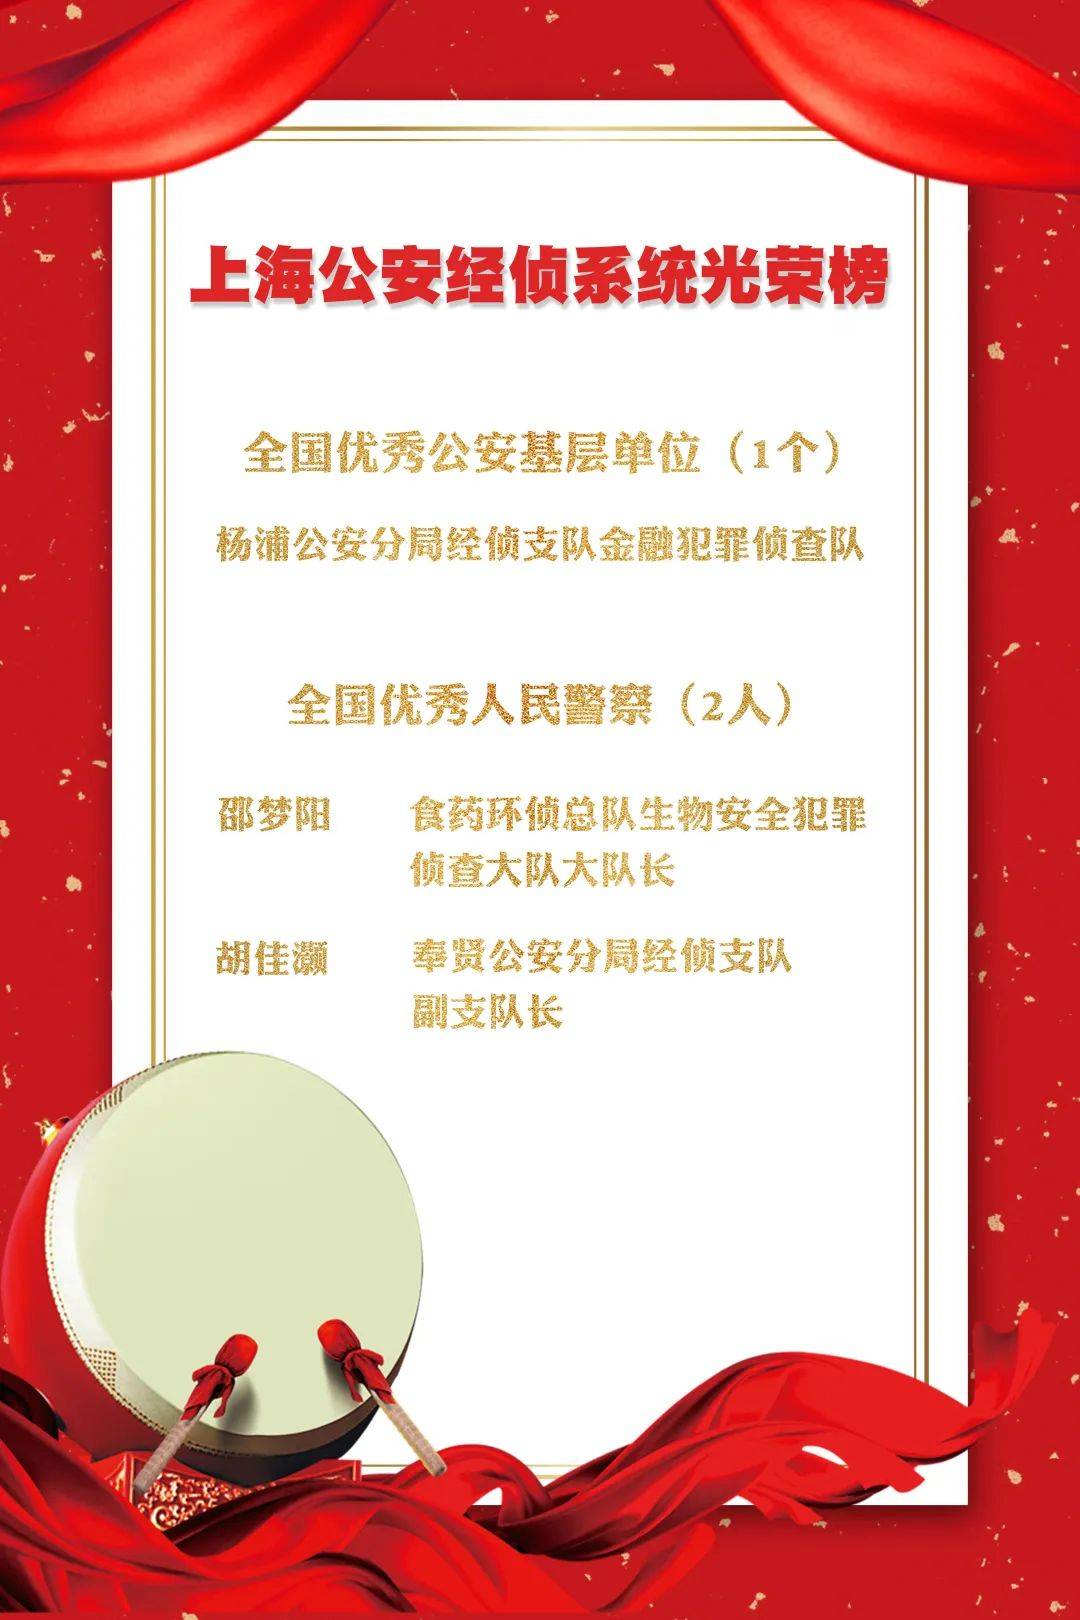 上海公安经侦部门一个集体两名个人获评全国级荣誉(图2)